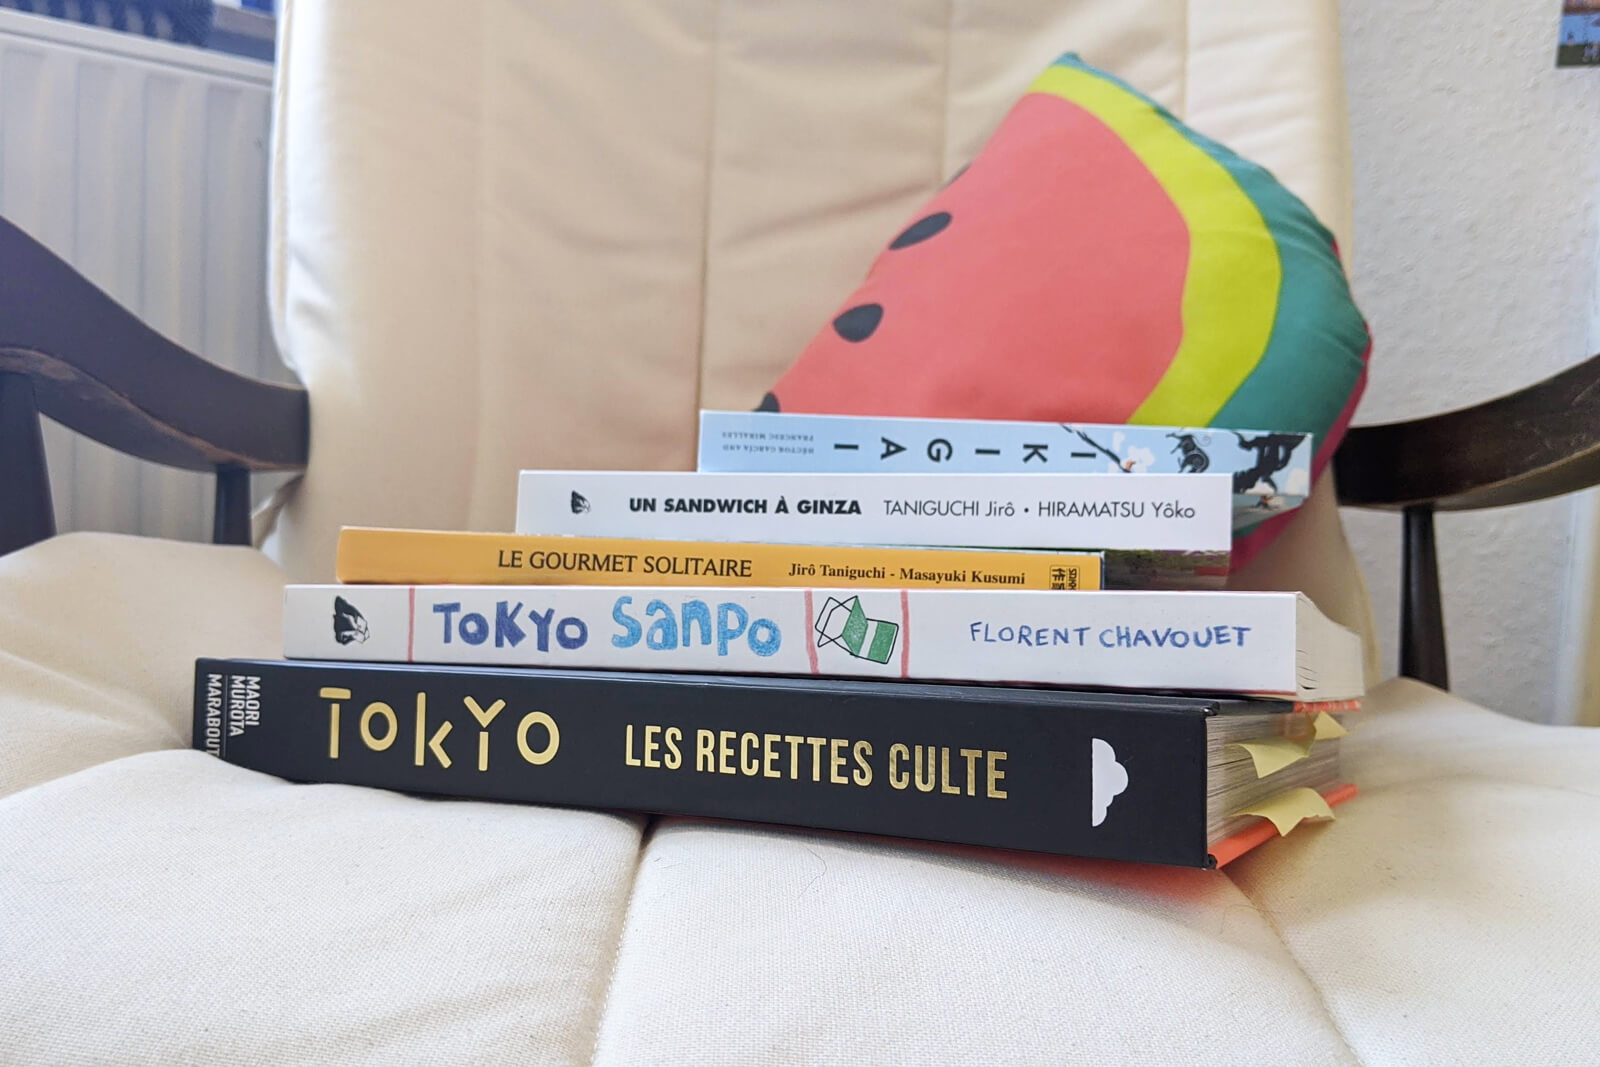 15 Livres à lire avant un voyage au Japon